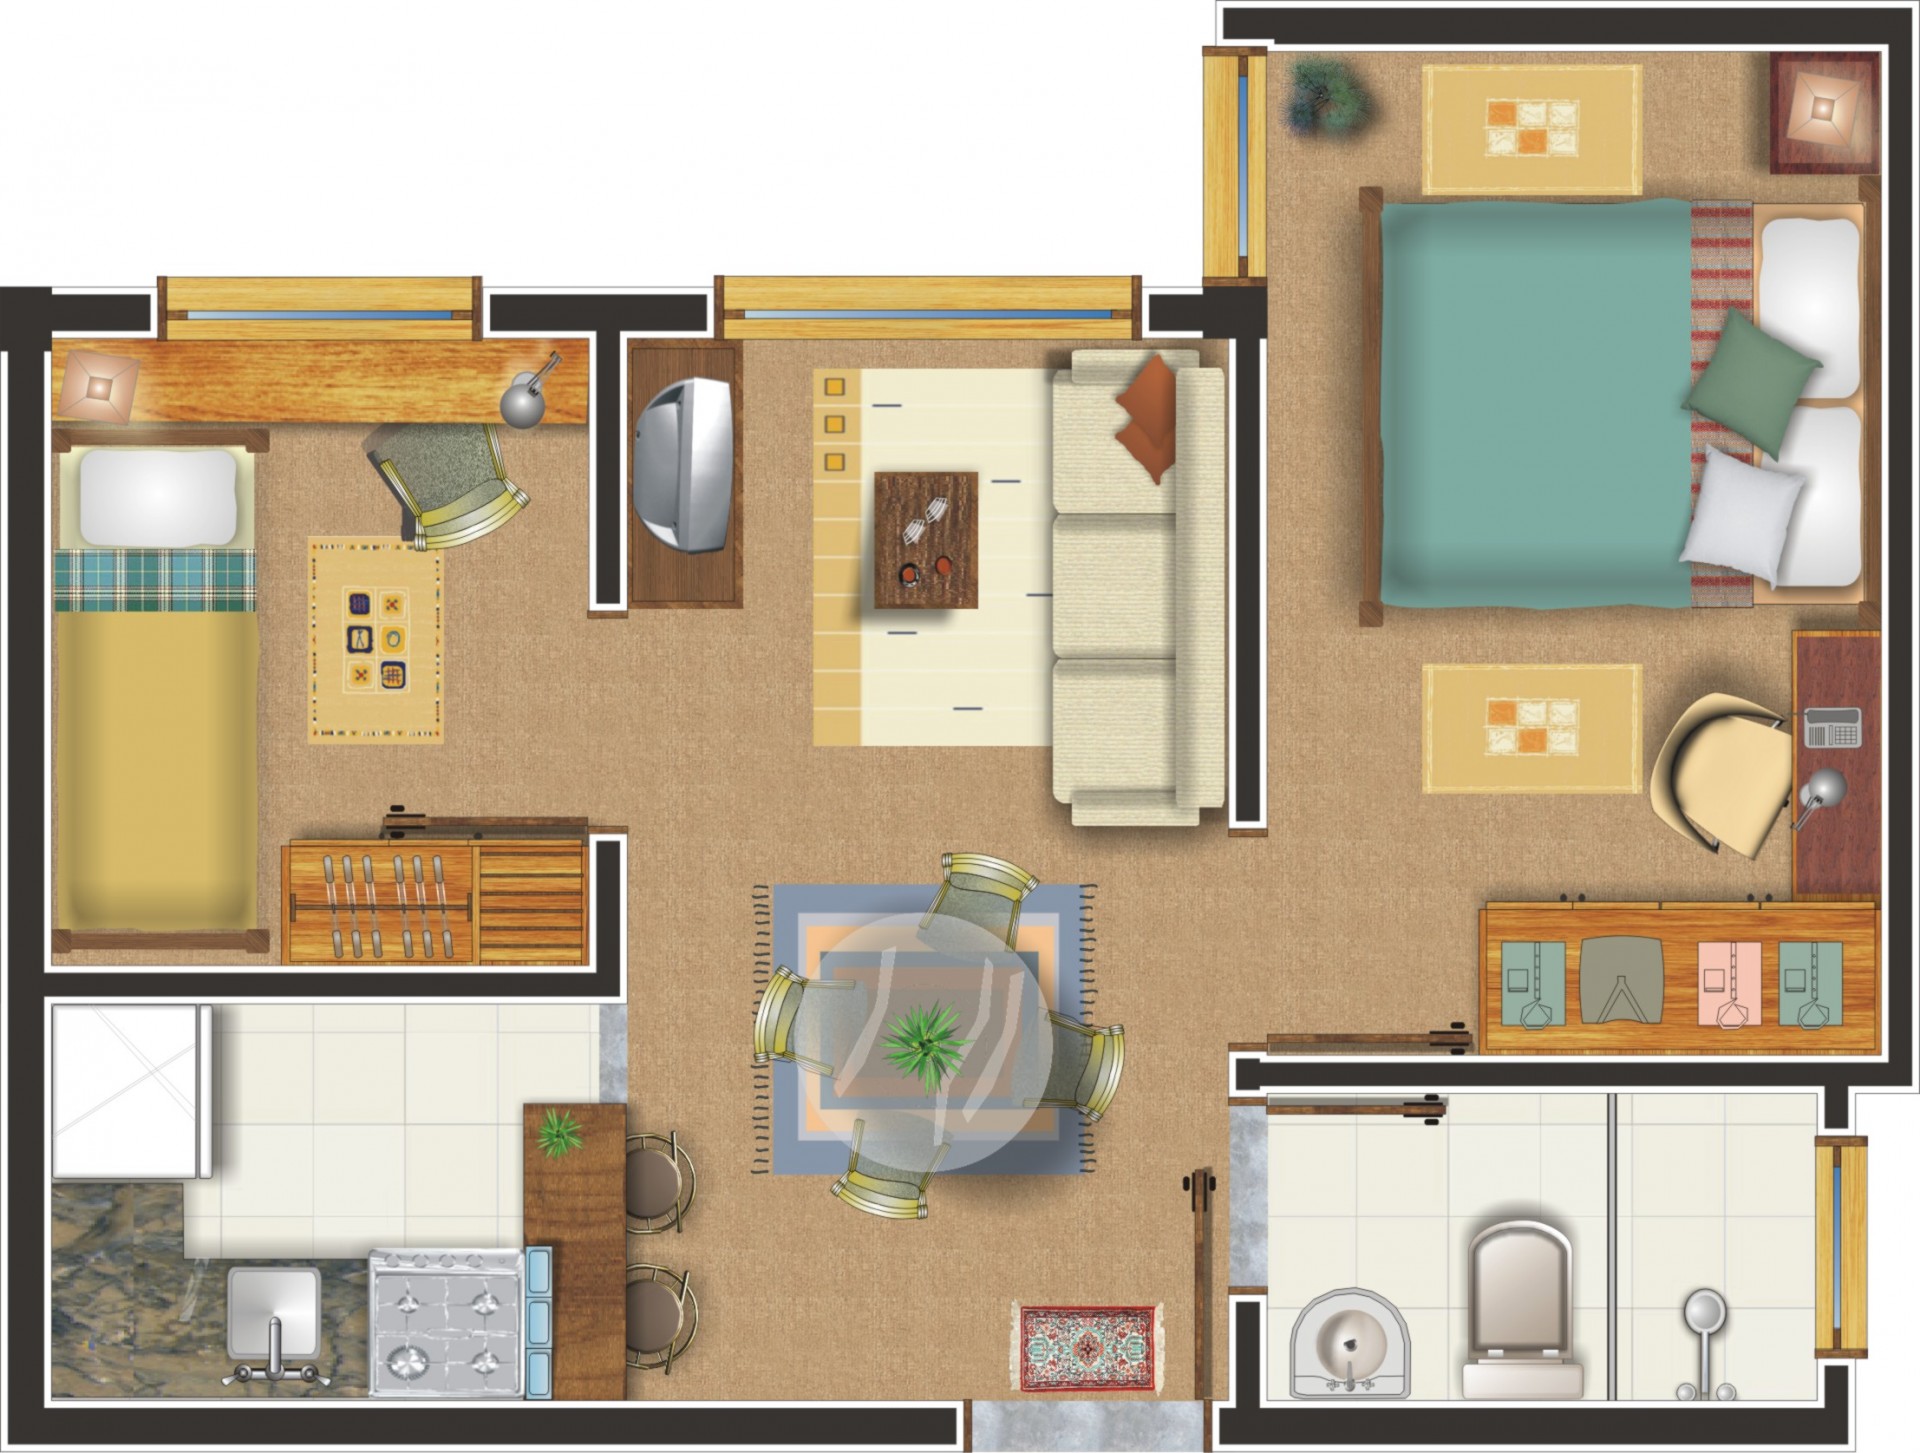 Apartamento com 2 dormitórios - Lateral